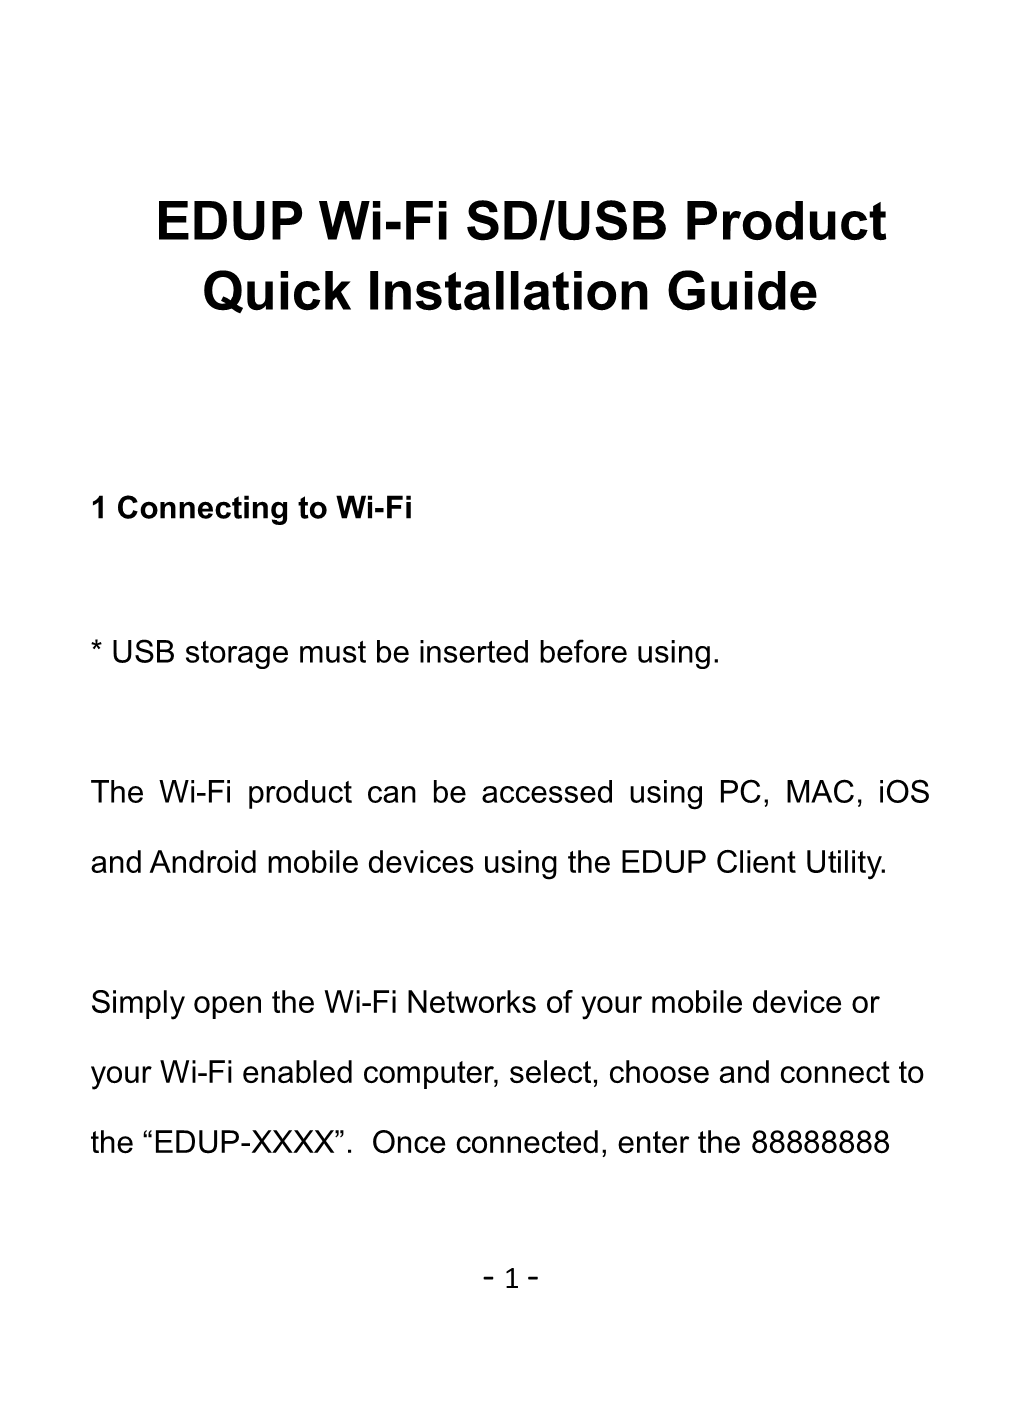 Edupwi-Fi SD/USB Product